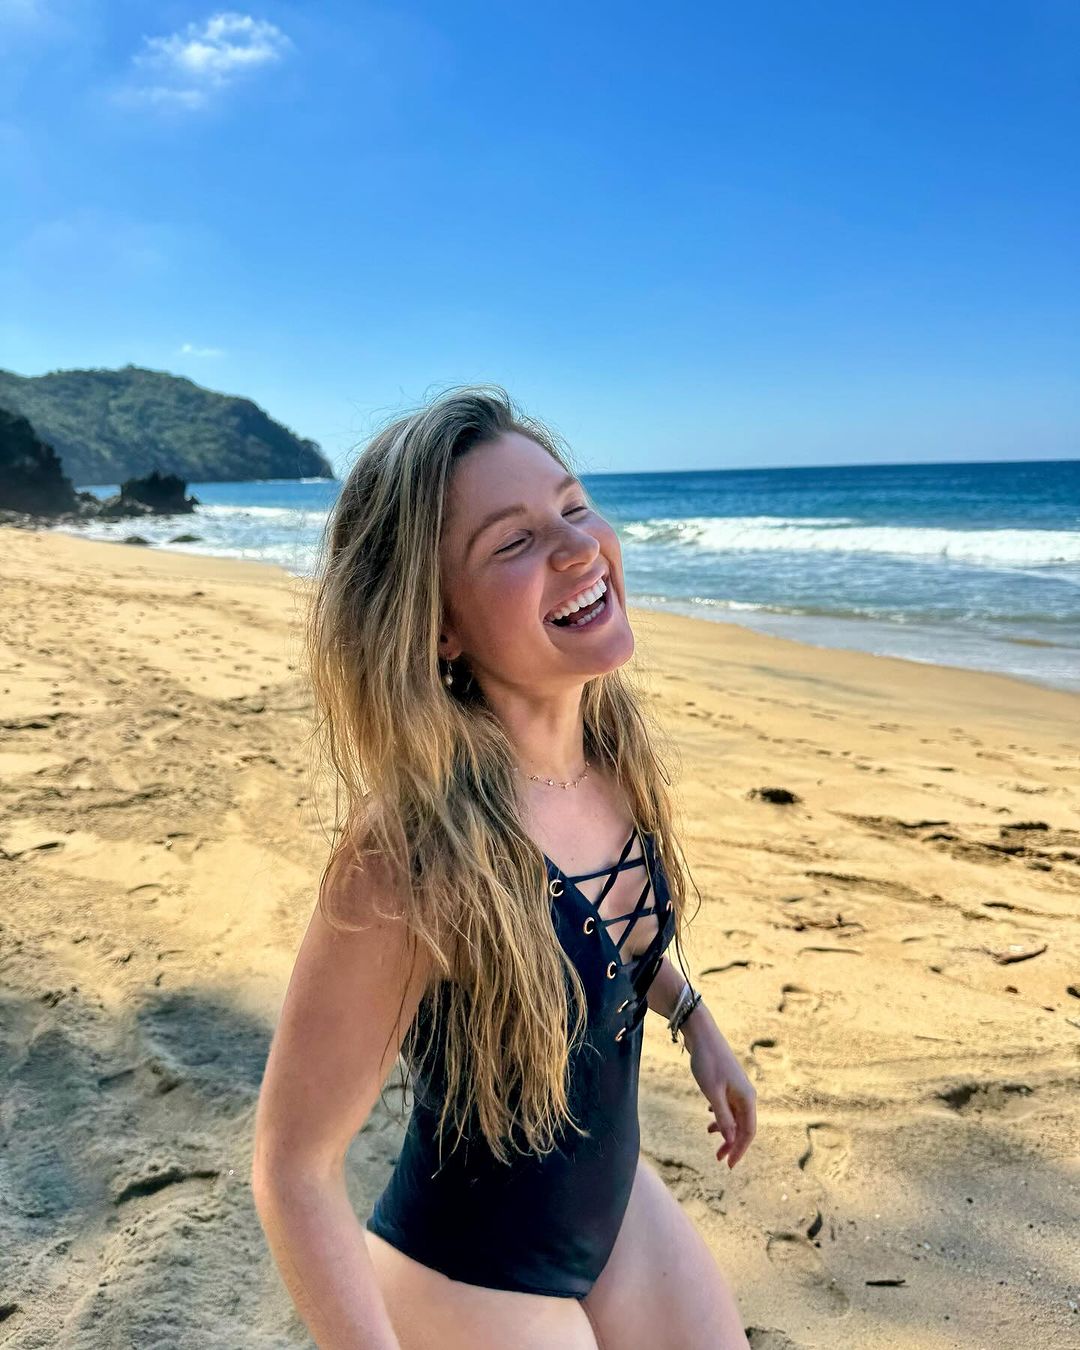 A Influenciadora aproveitando a praia em viagem ao México Instagram/@annemariehagerty